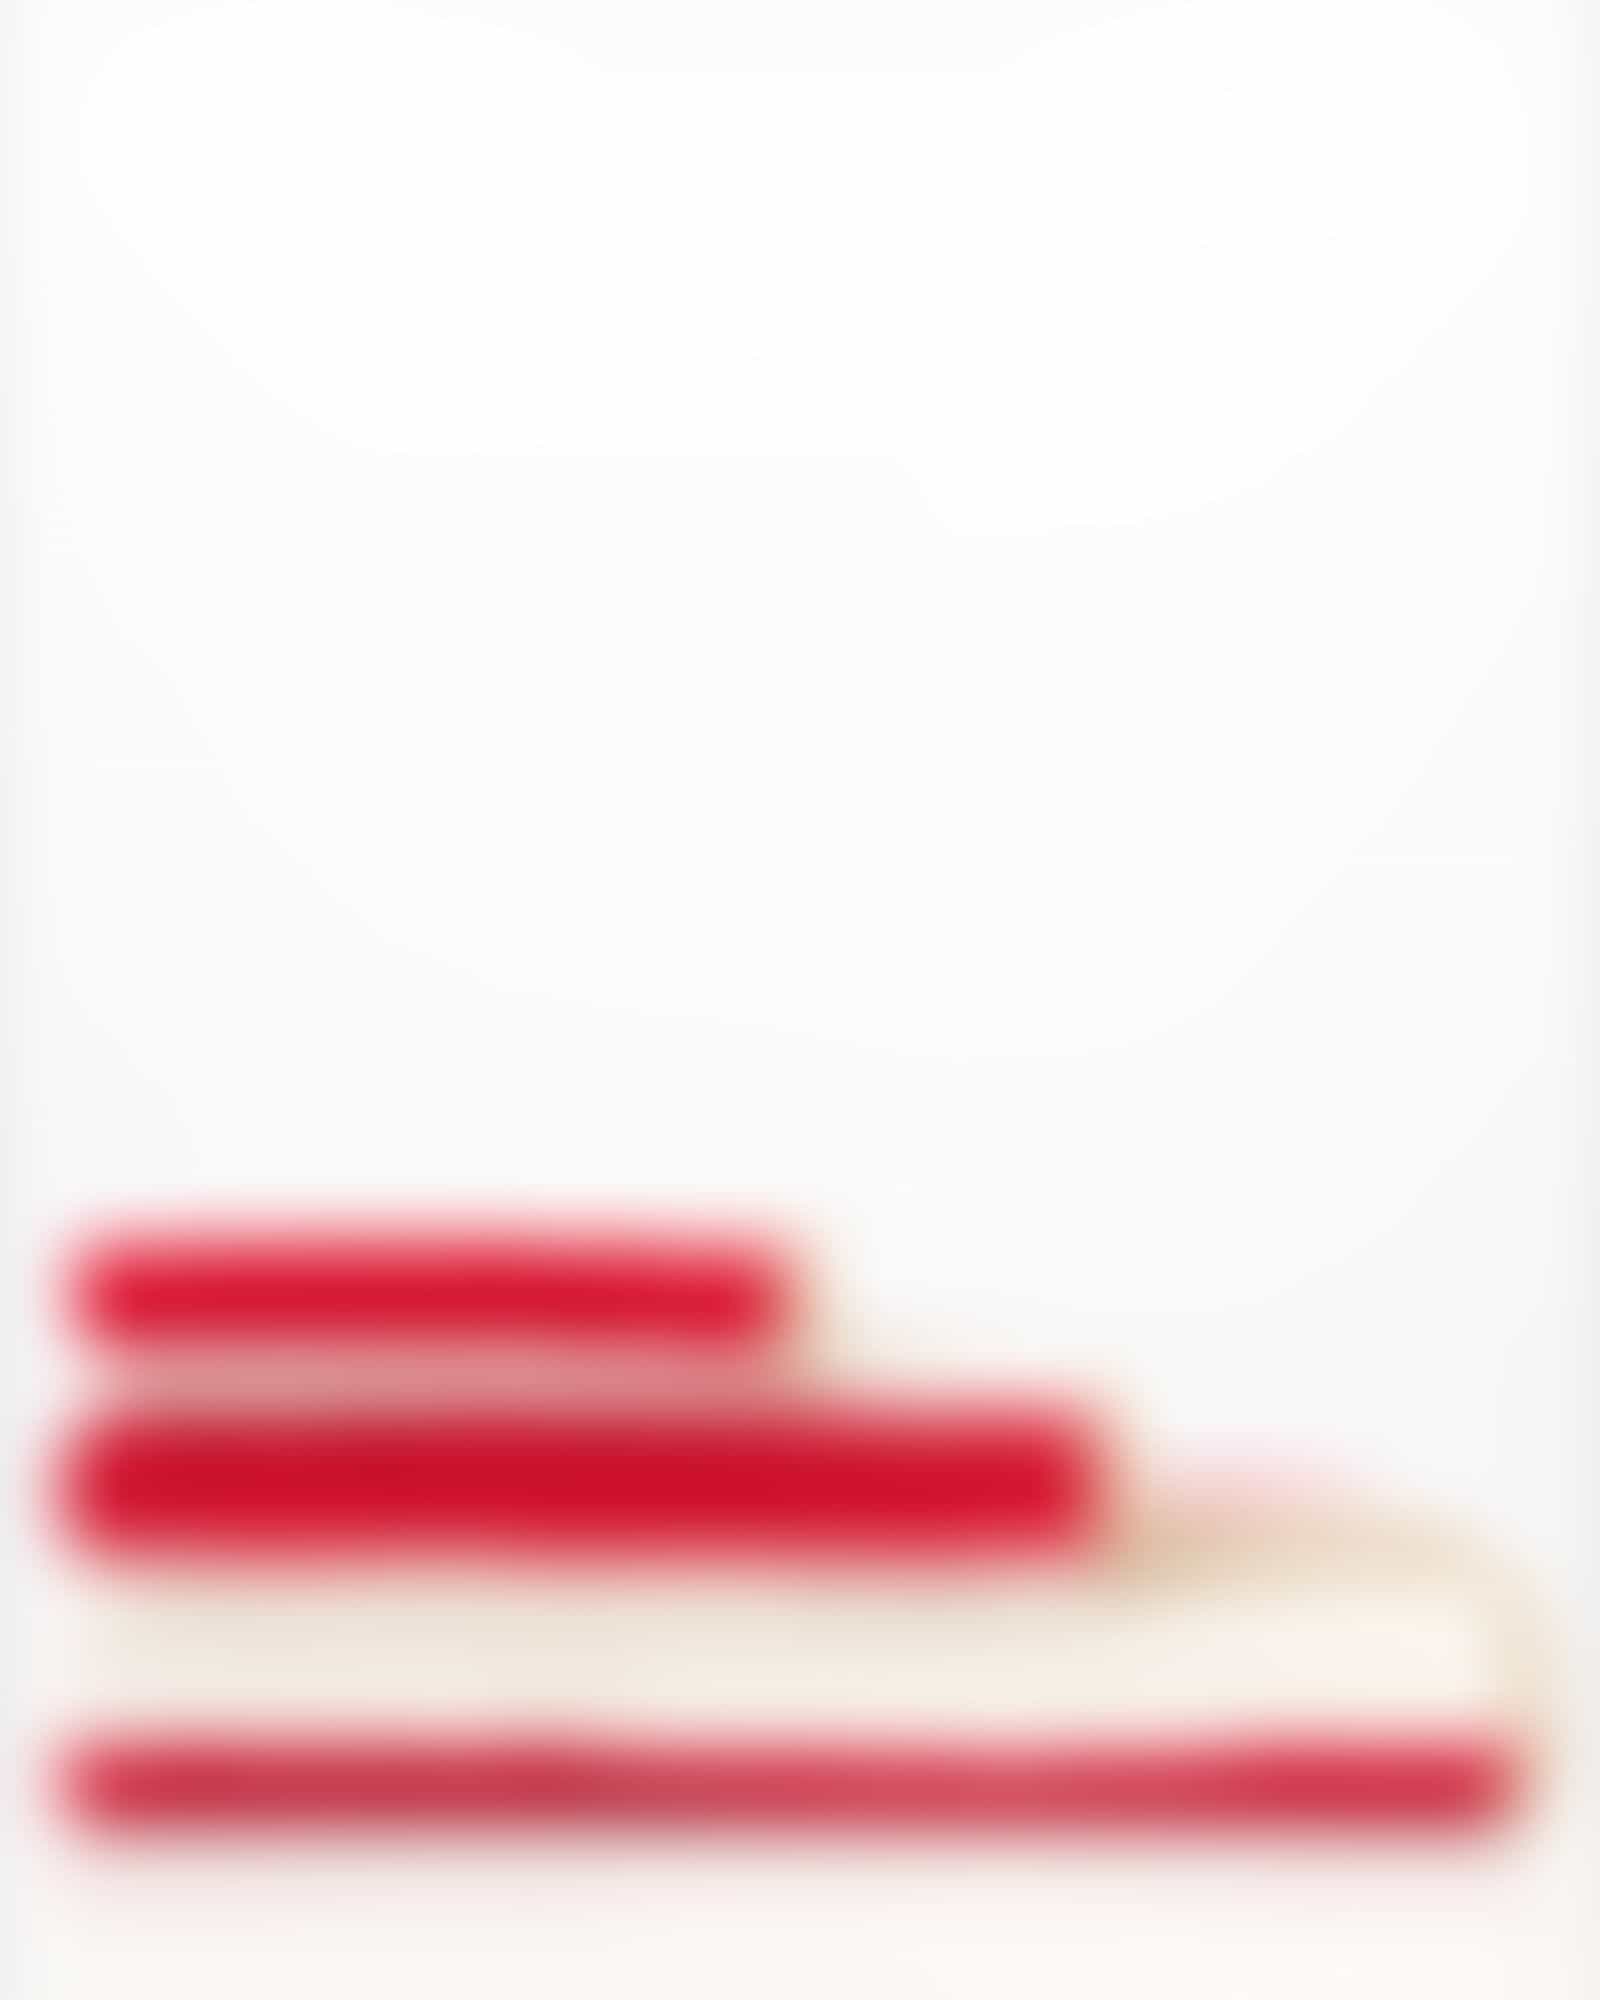 Cawö Handtücher Coast Stripes 6213 - Farbe: rot-natur - 32 - Duschtuch 70x140 cm